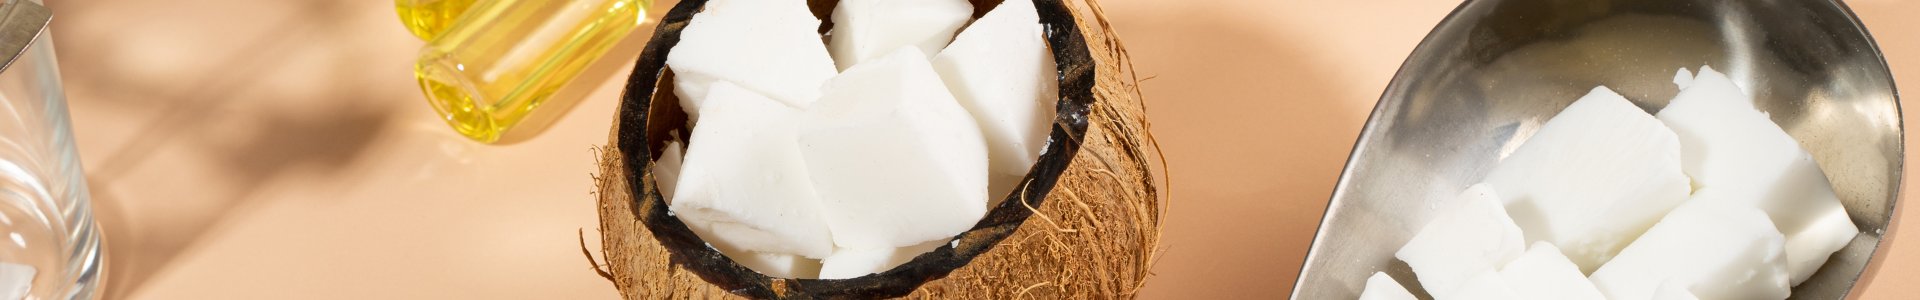 Pure Coconut Wax - Fraendi – FRÆNDI